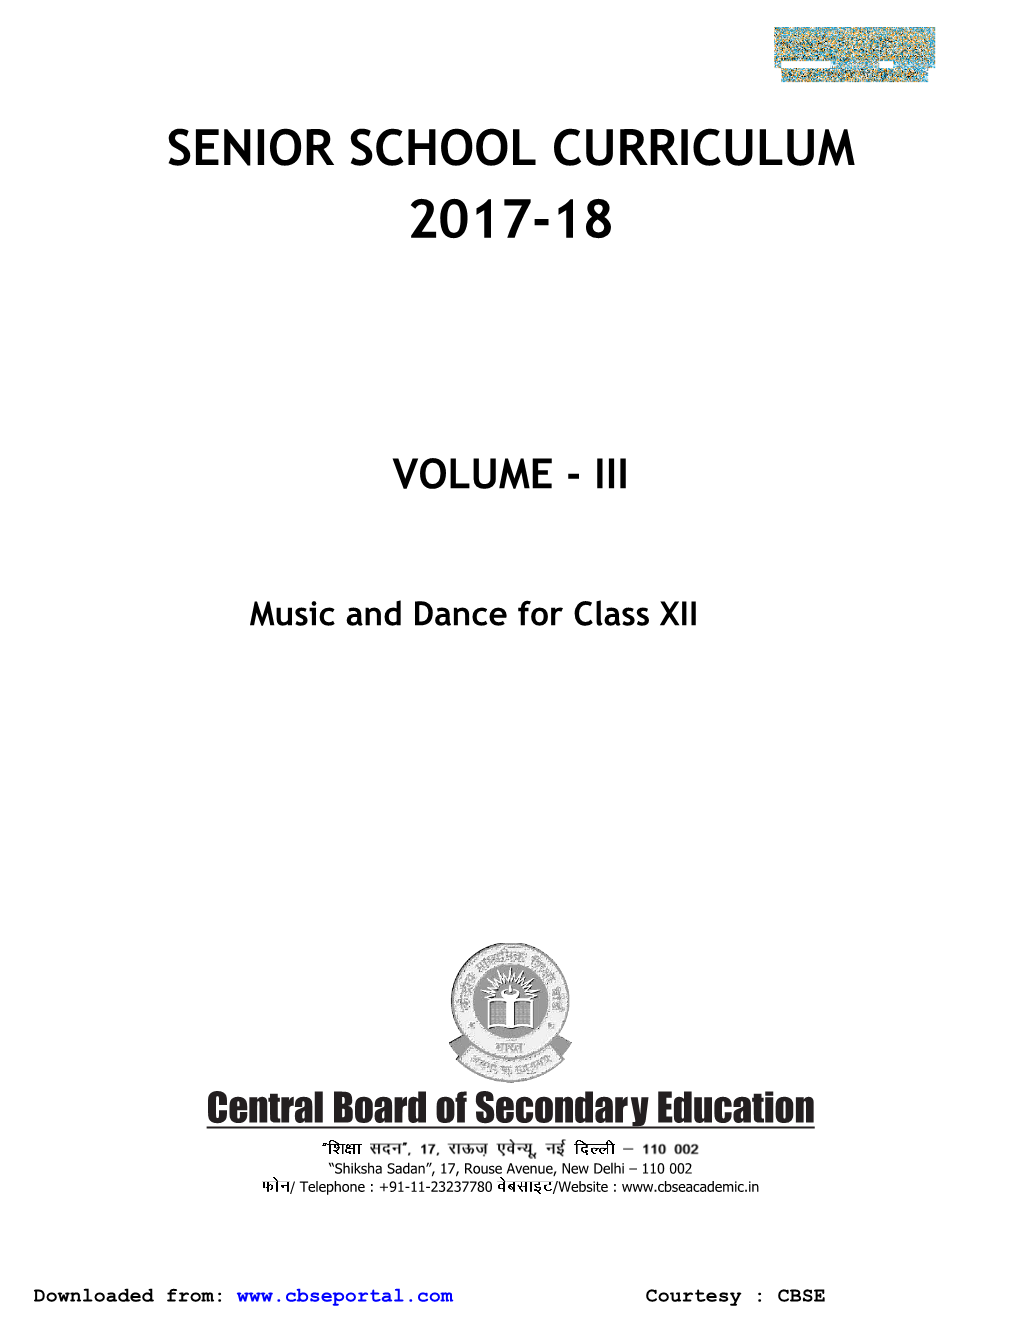 Senior School Curriculum 2017-18